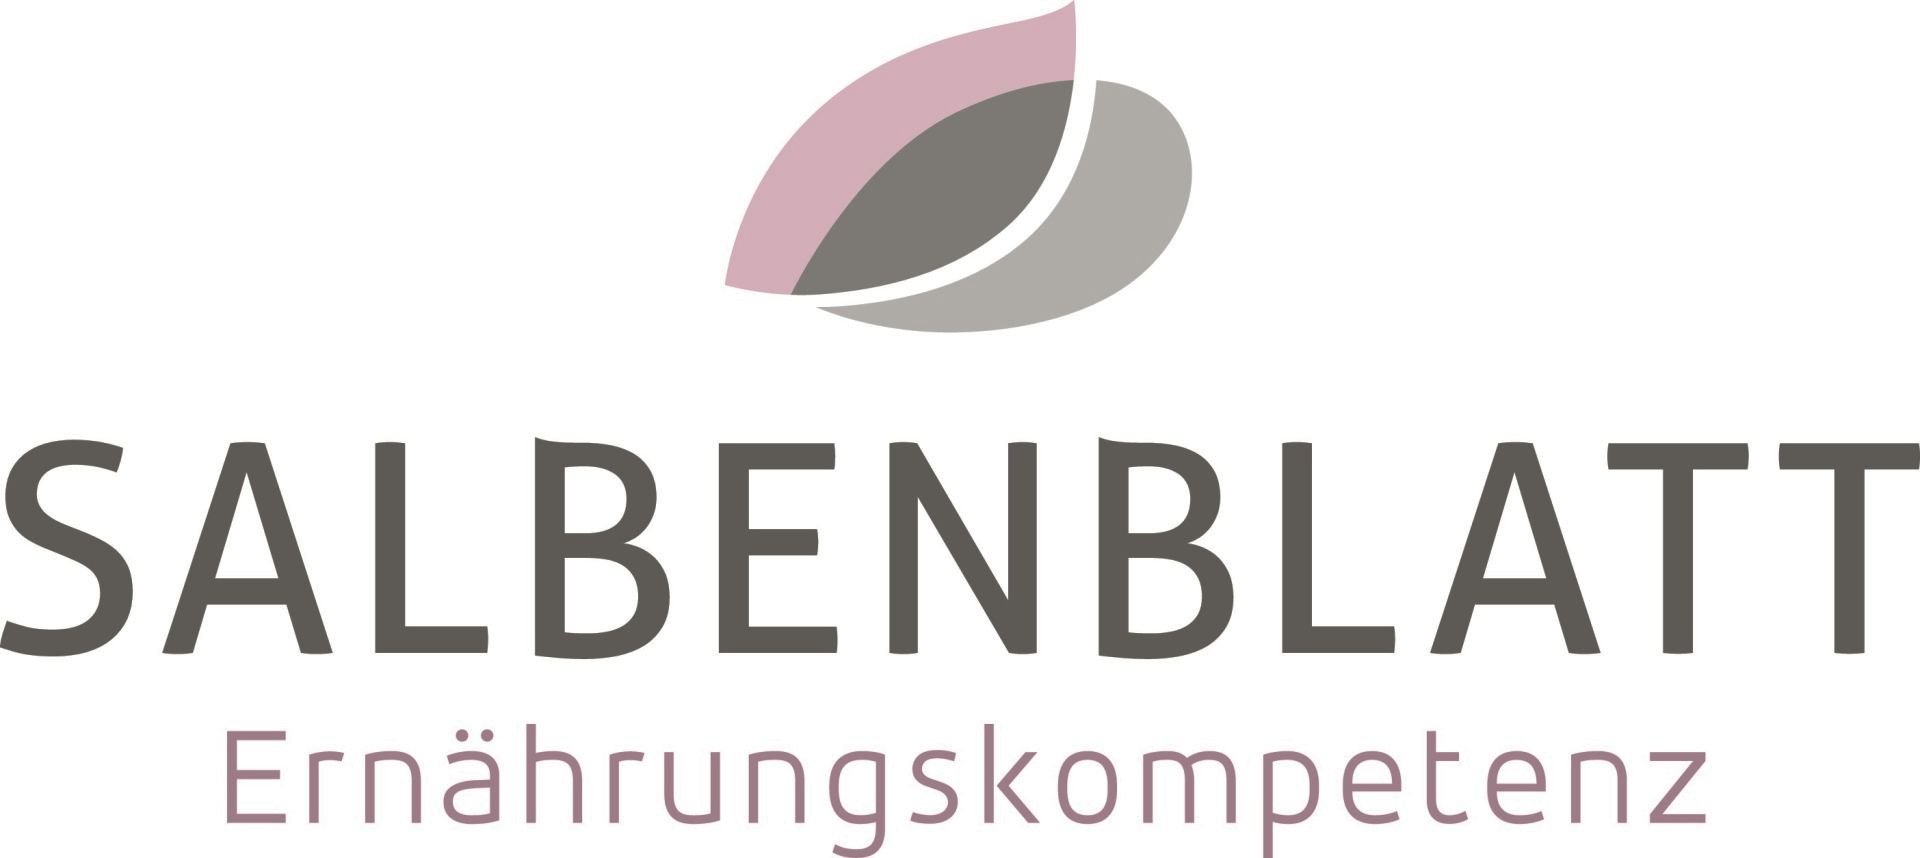 Logo Helene Salbenblatt